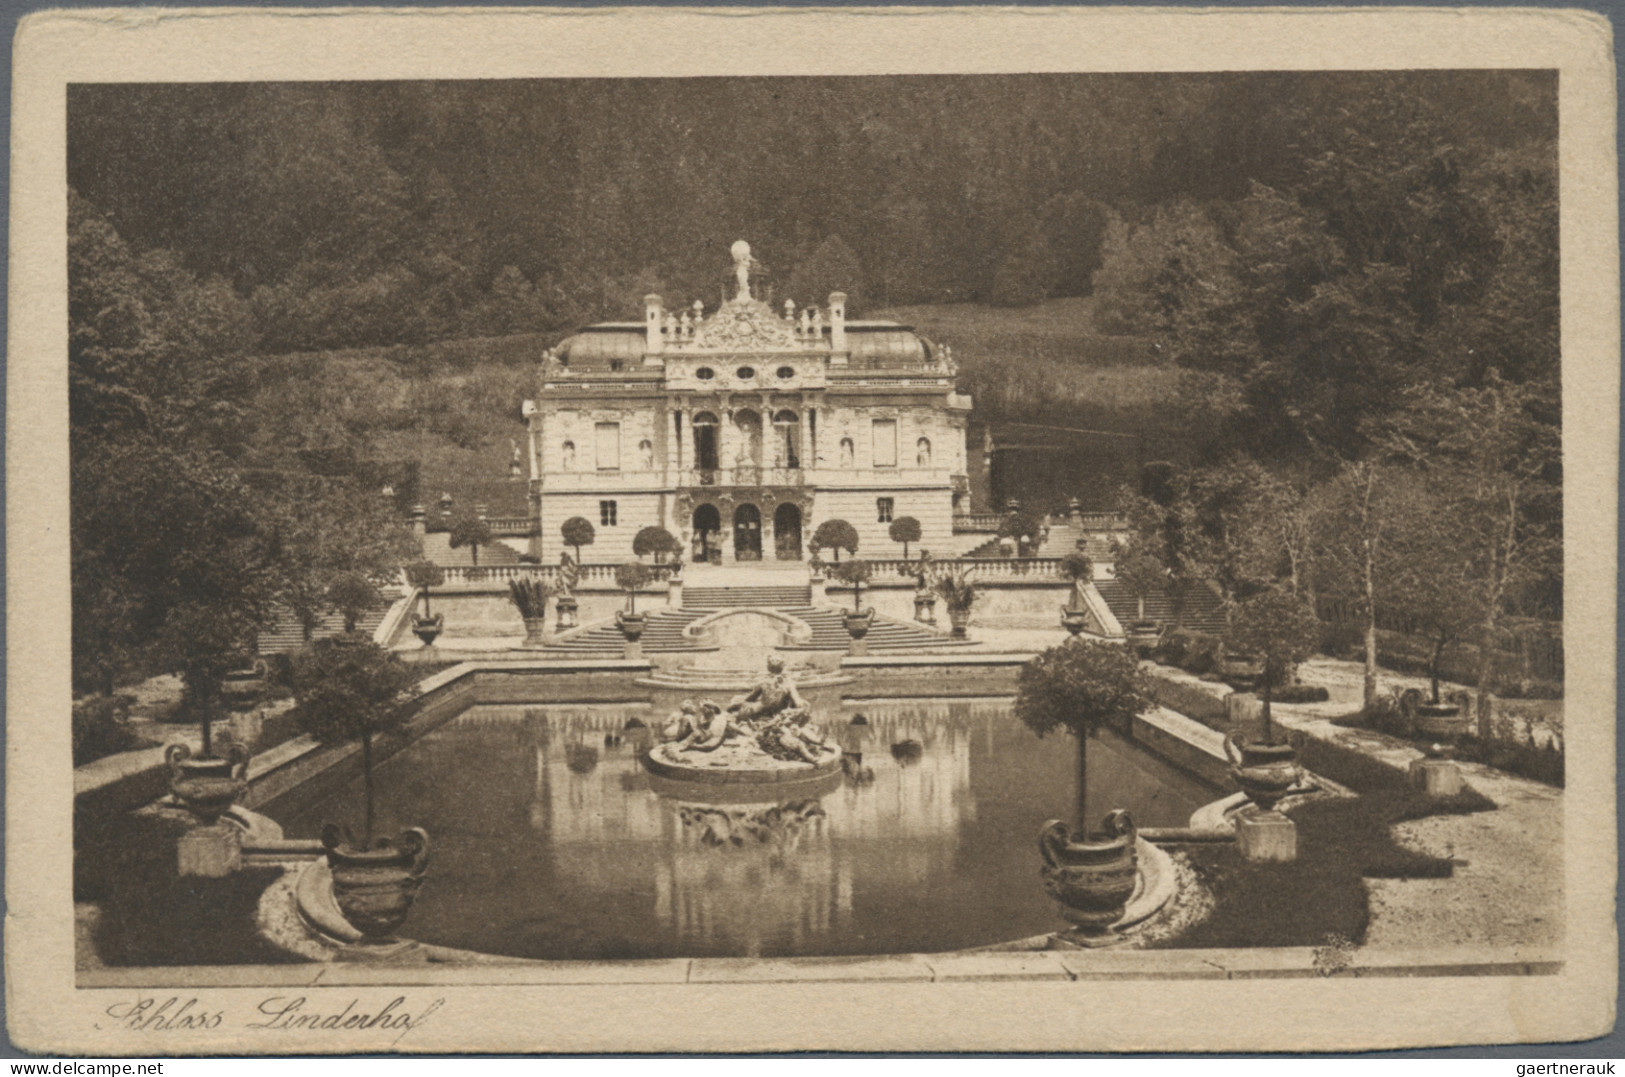 Ansichtskarten: Bayern: 1900/1945, Sammlung von 248 Ansichtskarten, überwiegend